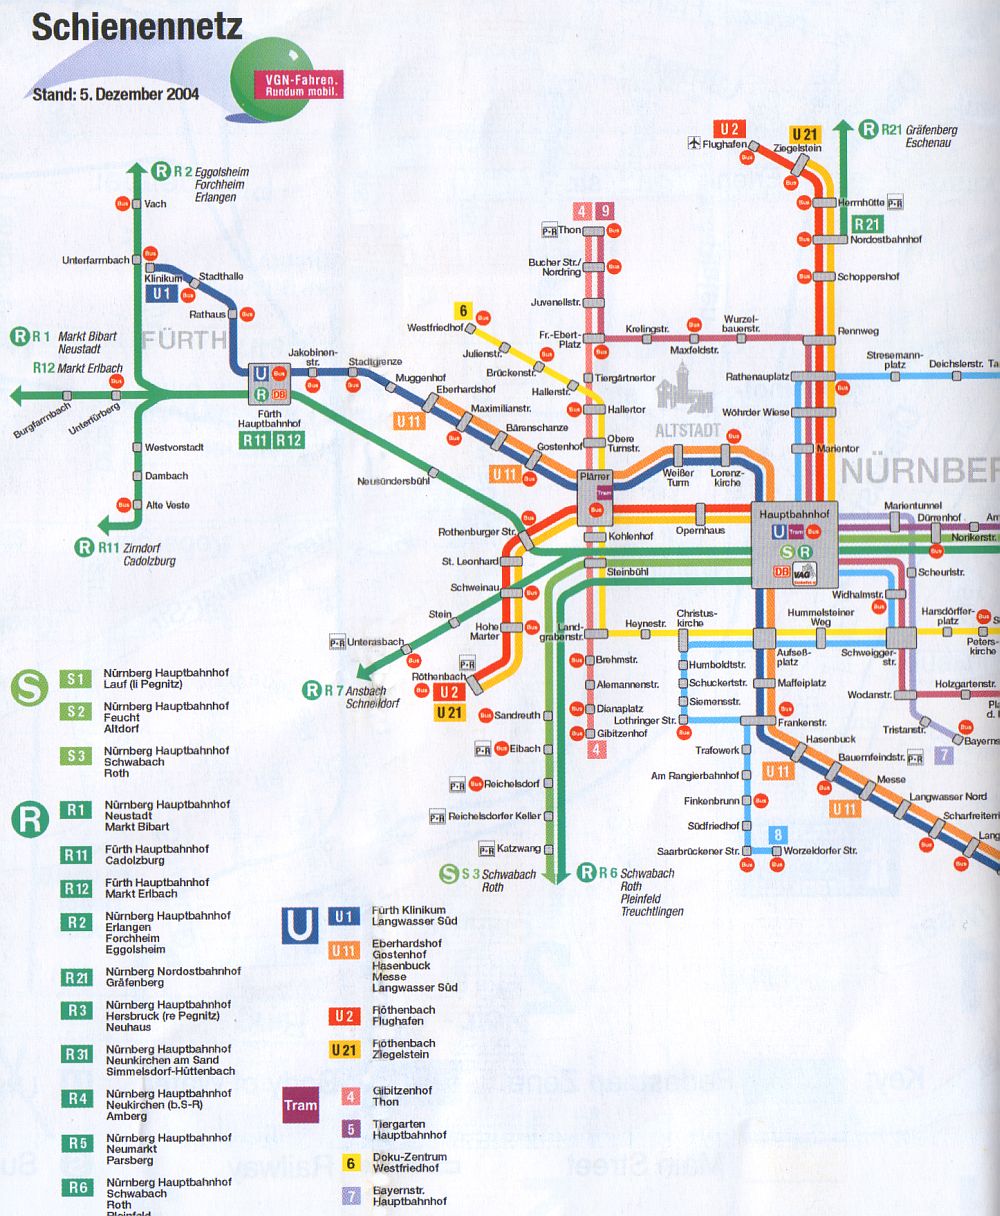 Nuremberg subway plan